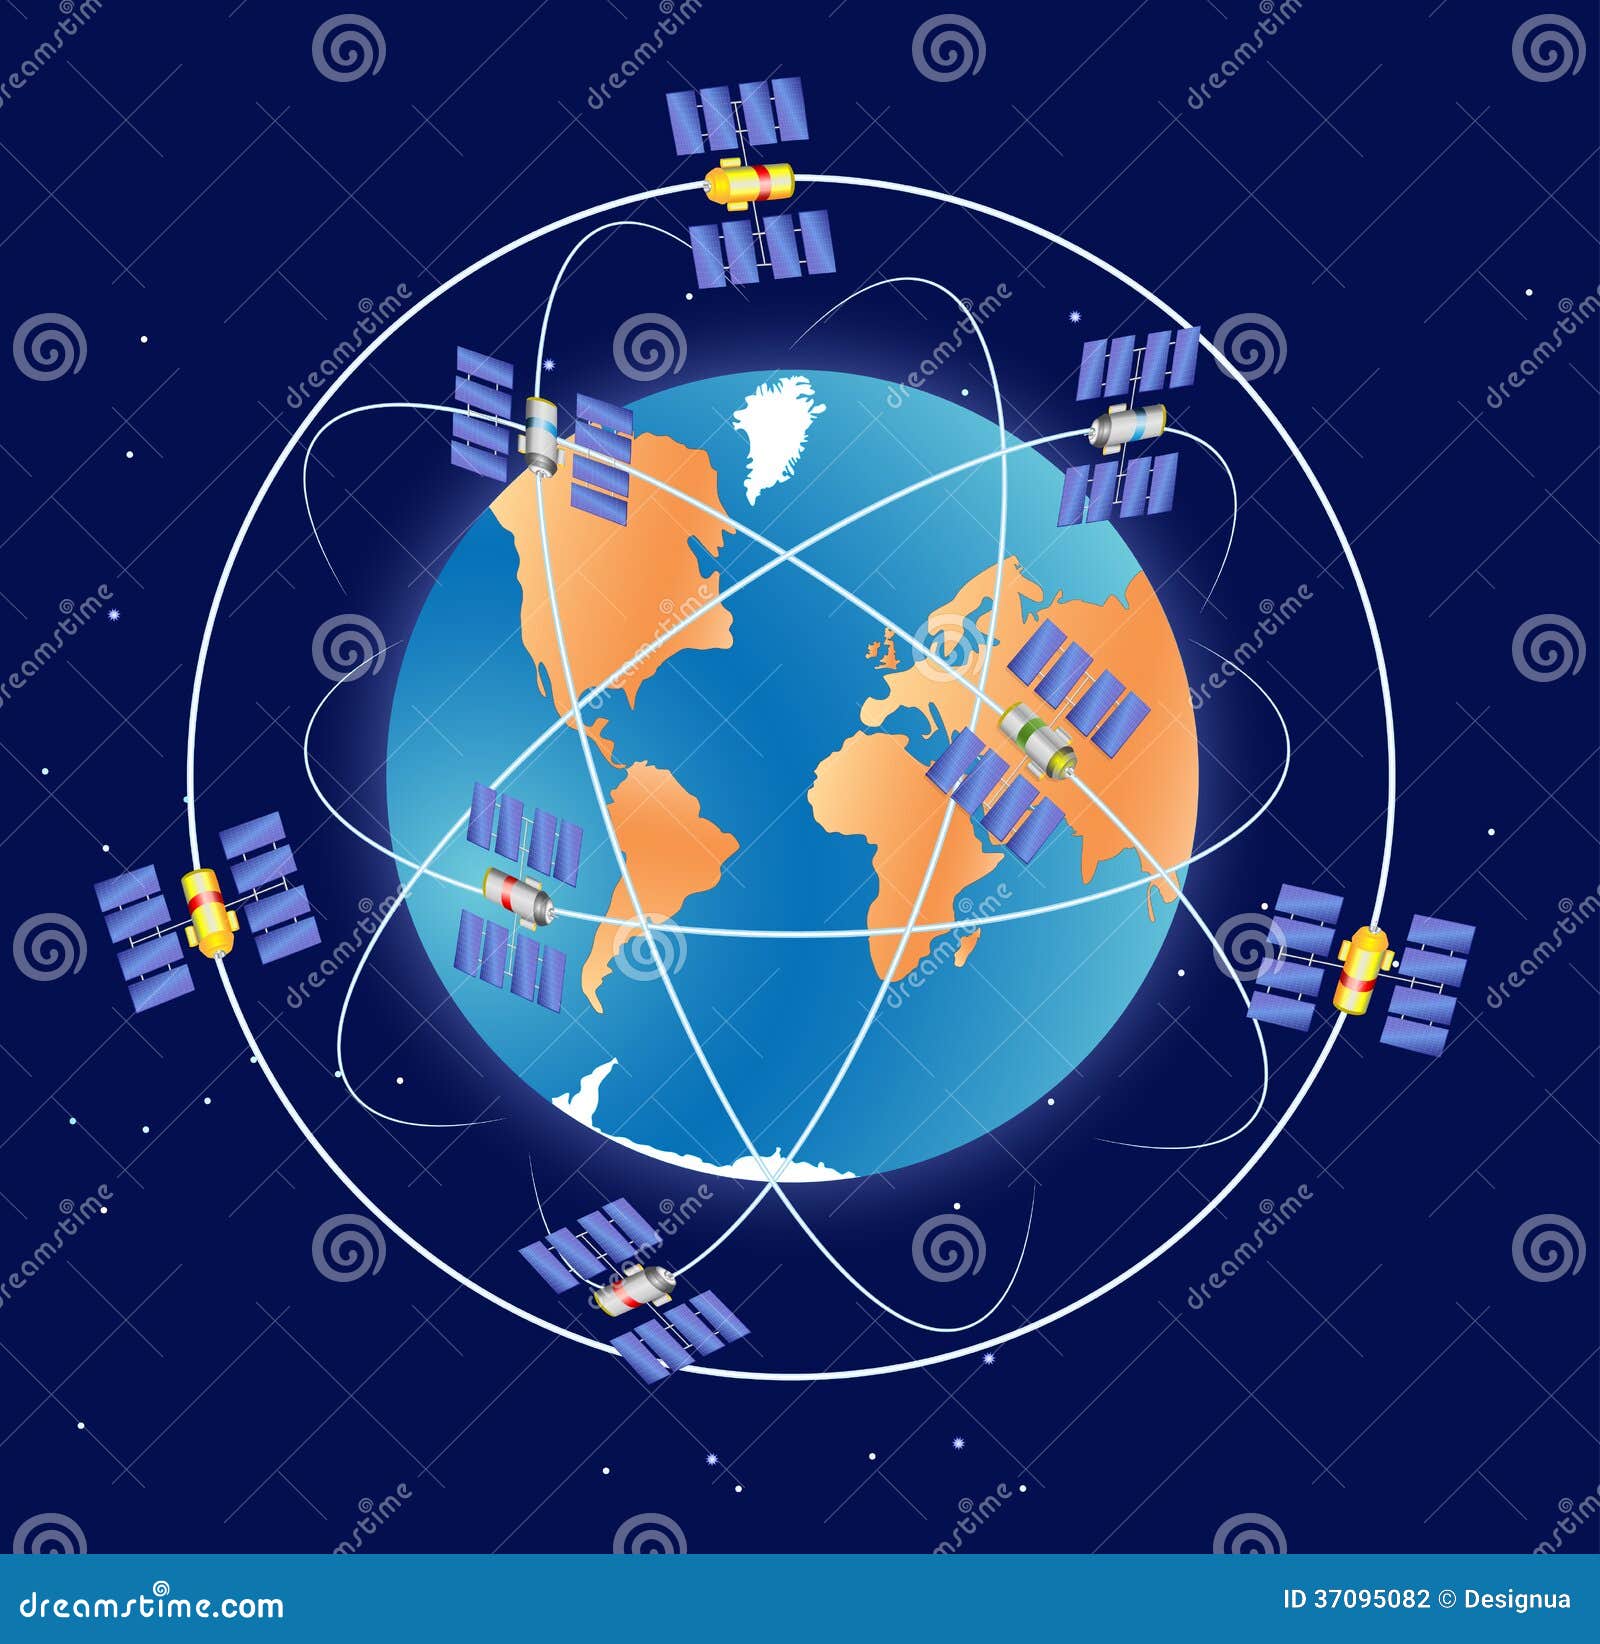 北斗卫星导航系统_gps系统_gps系统由哪几部分组成